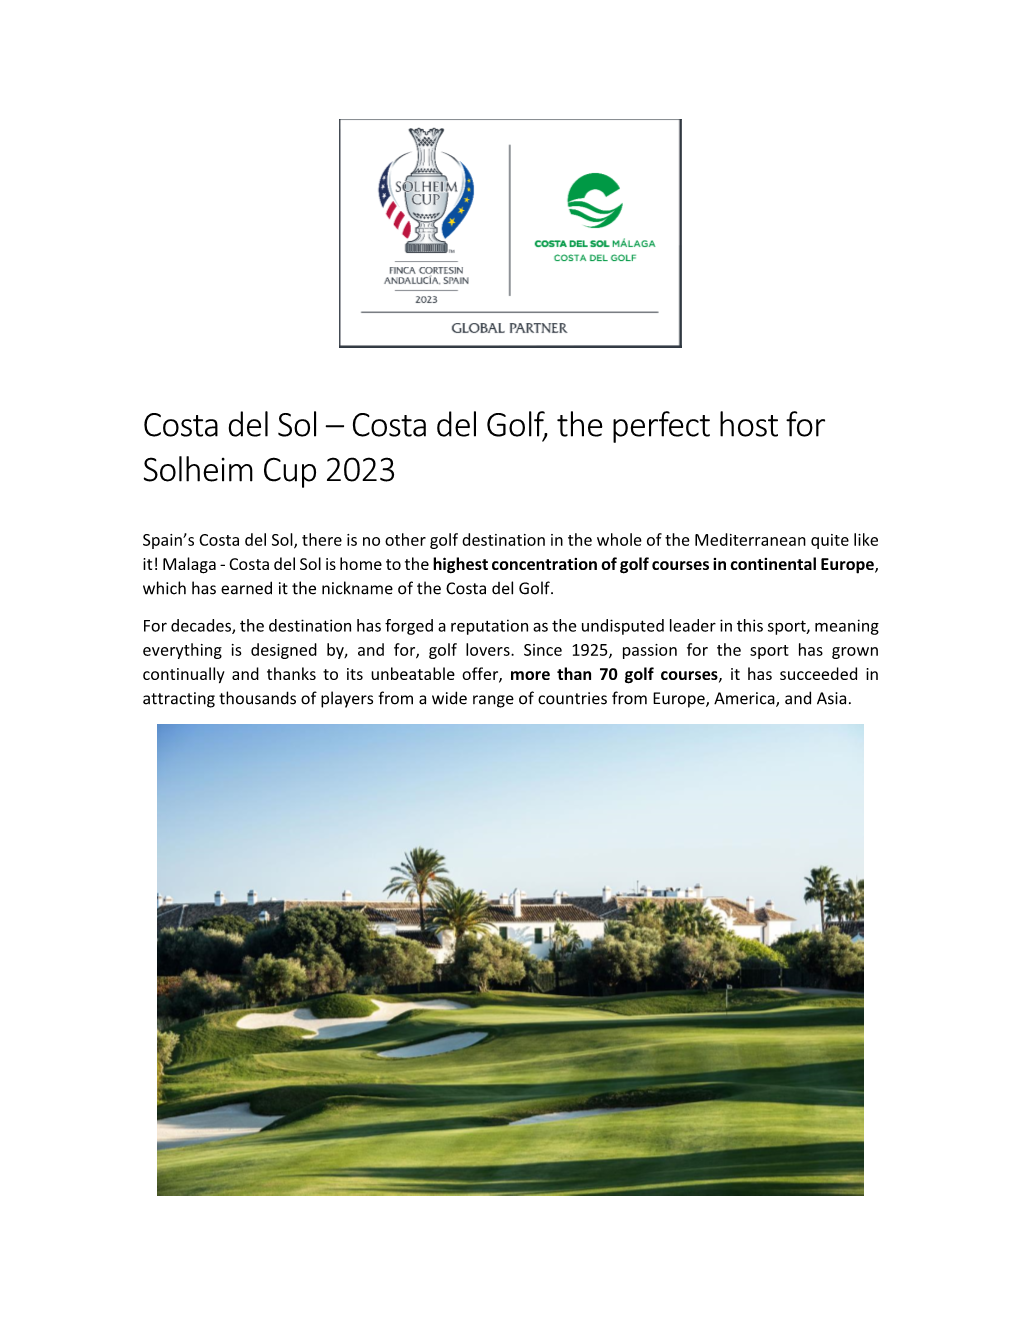 Costa Del Sol – Costa Del Golf, the Perfect Host for Solheim Cup 2023